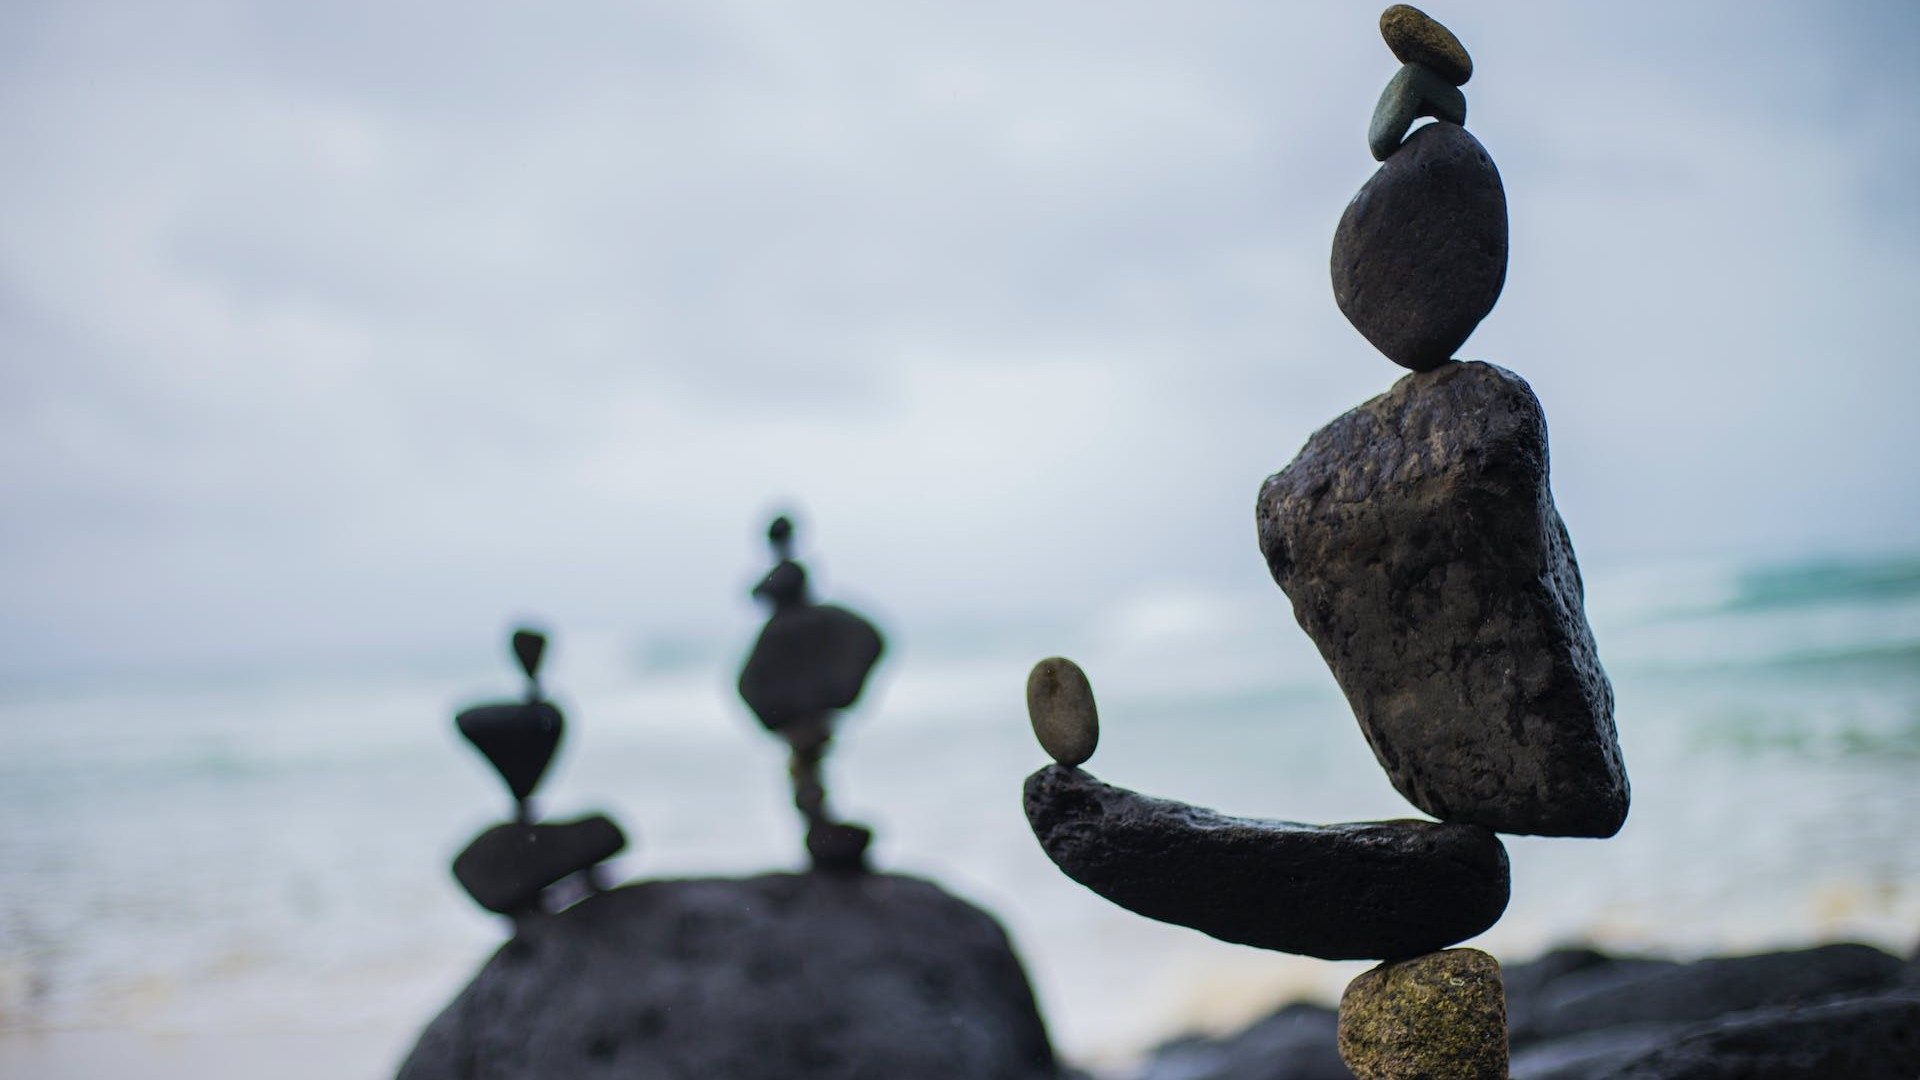 Steine am Meer stehen in perfekter Balance aufeinander